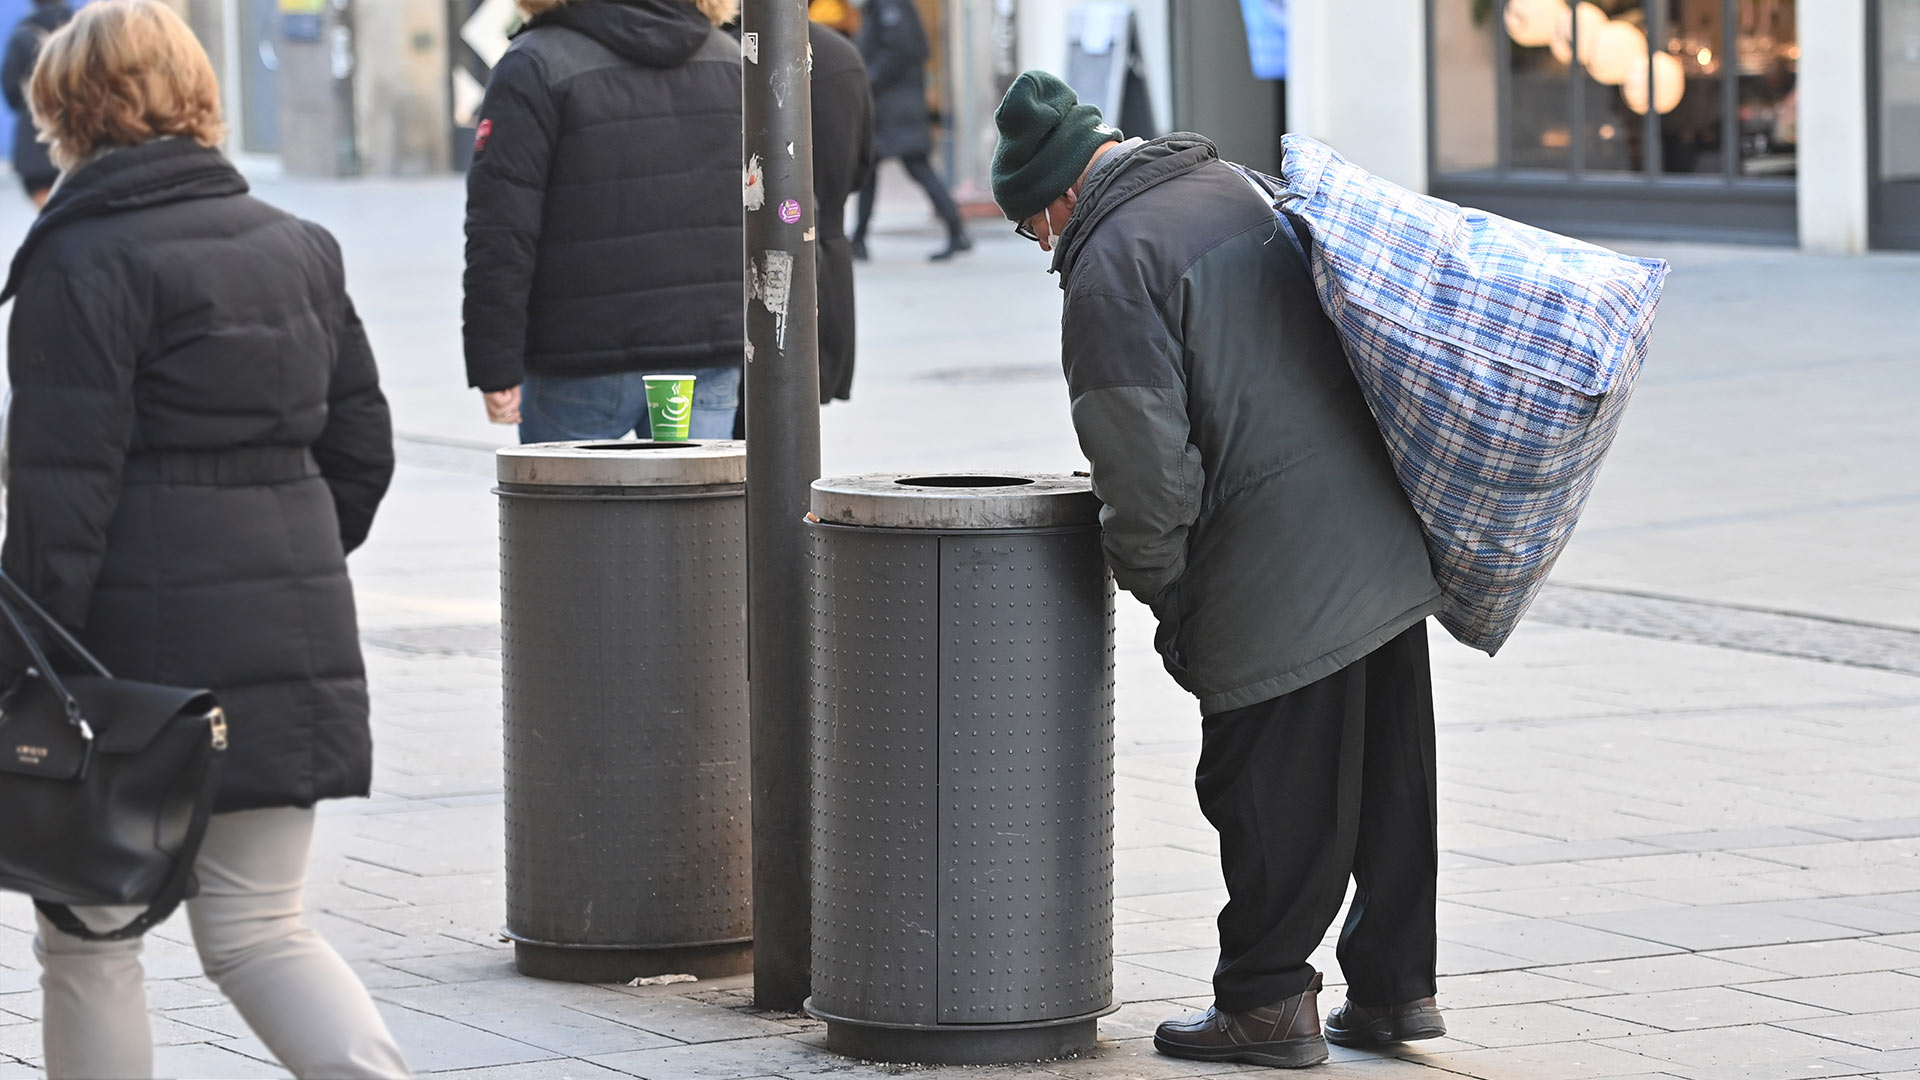 Ein alter Mann blickt in einen Abfalleimer und sucht nach Pfandflaschen | picture alliance / SvenSimon